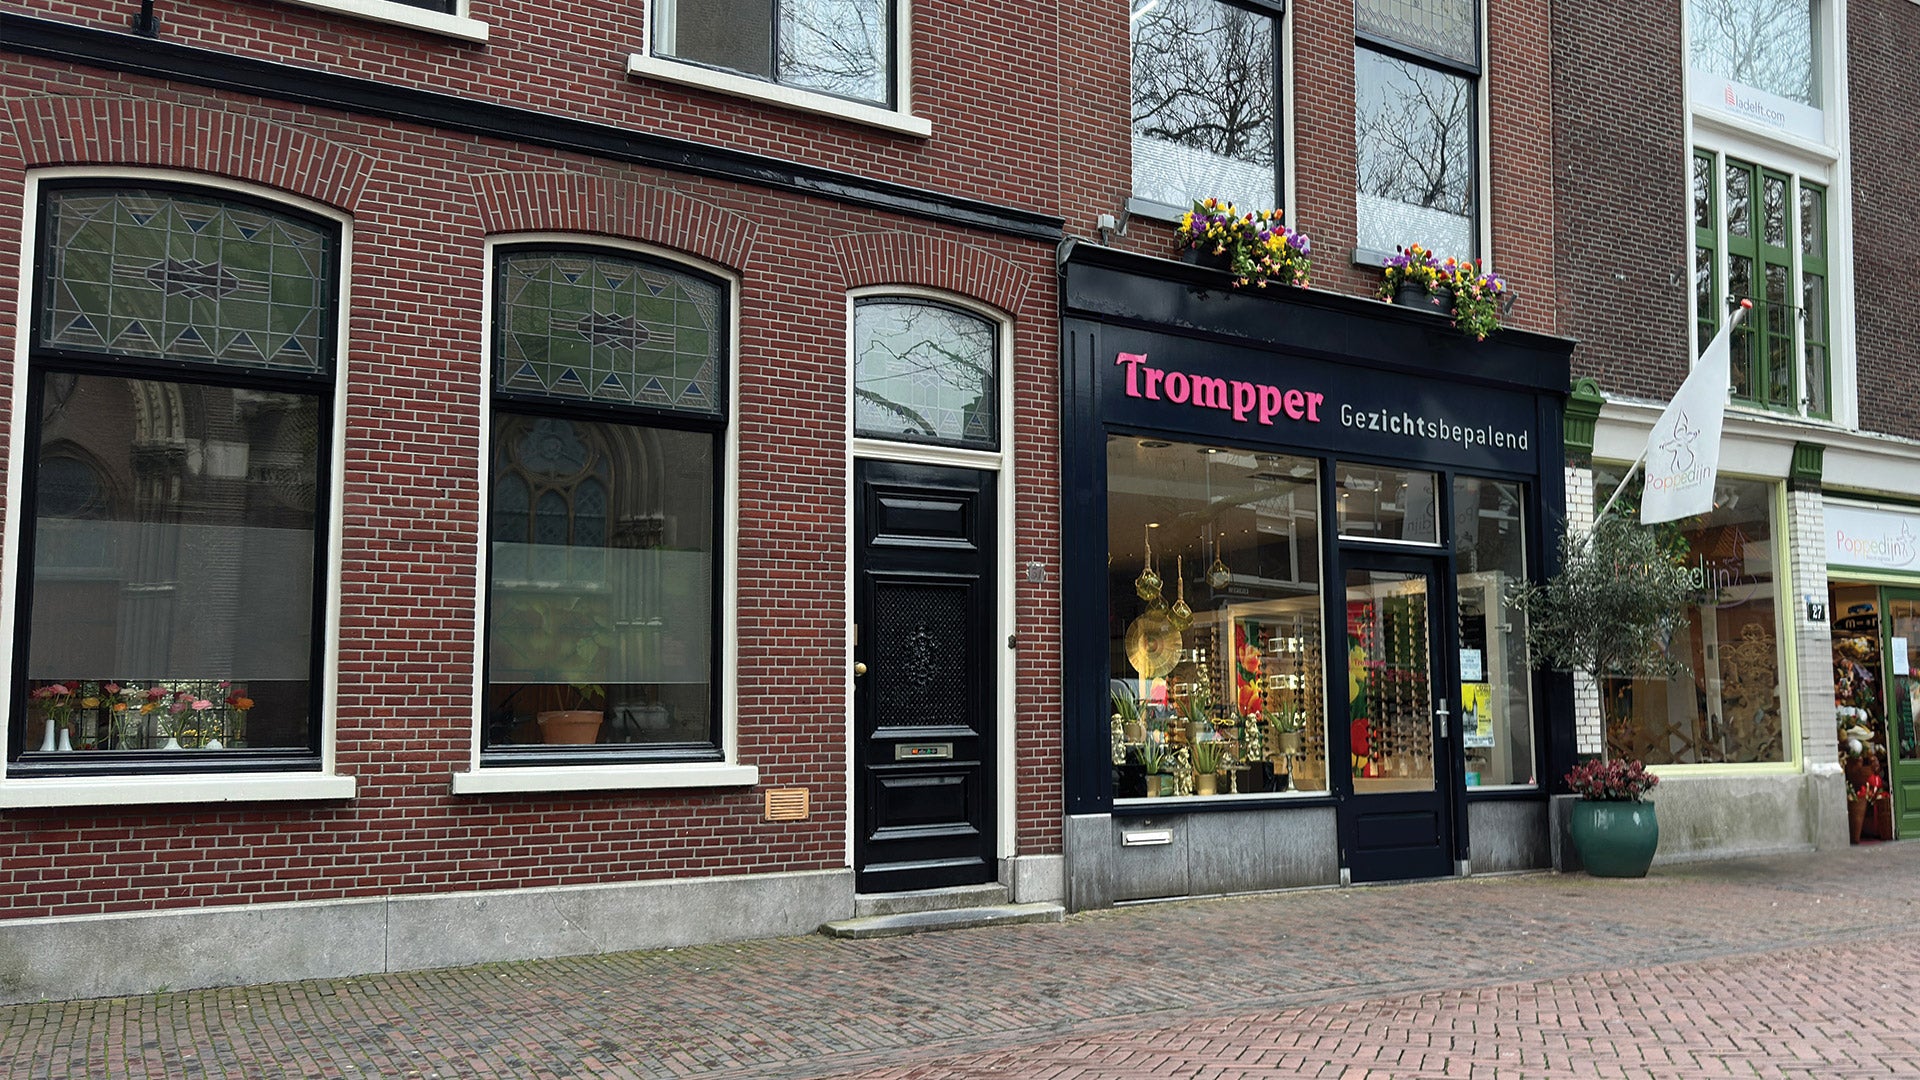 Trompper Optiek in Delft Logo Winkel Gezichtsbepalend Brillenwinkel Optiek EveryWear CapeTown Verkooppunt